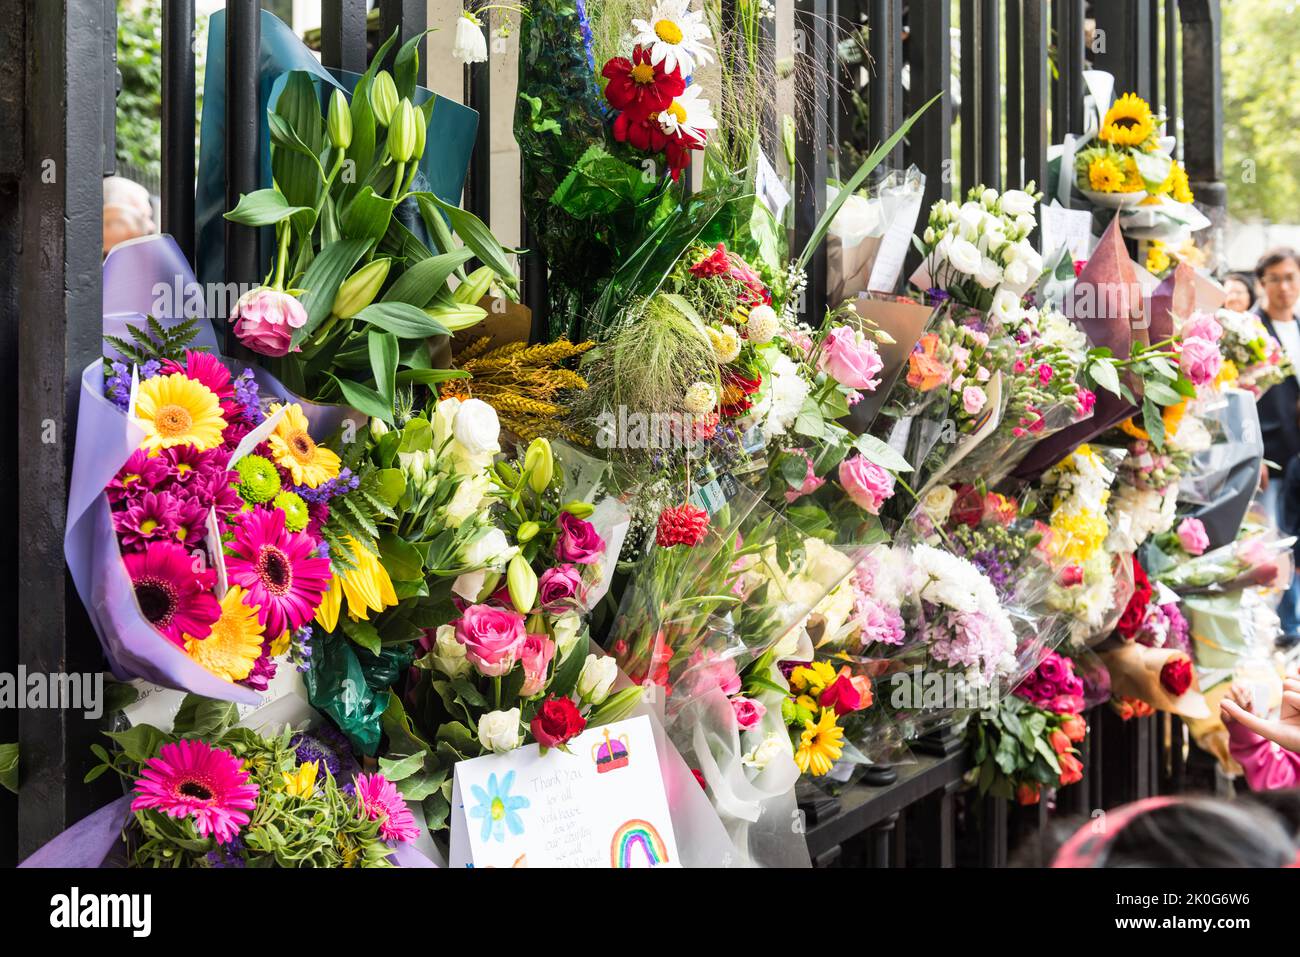 Flowers at Buckingham Palace gates Stock Photo